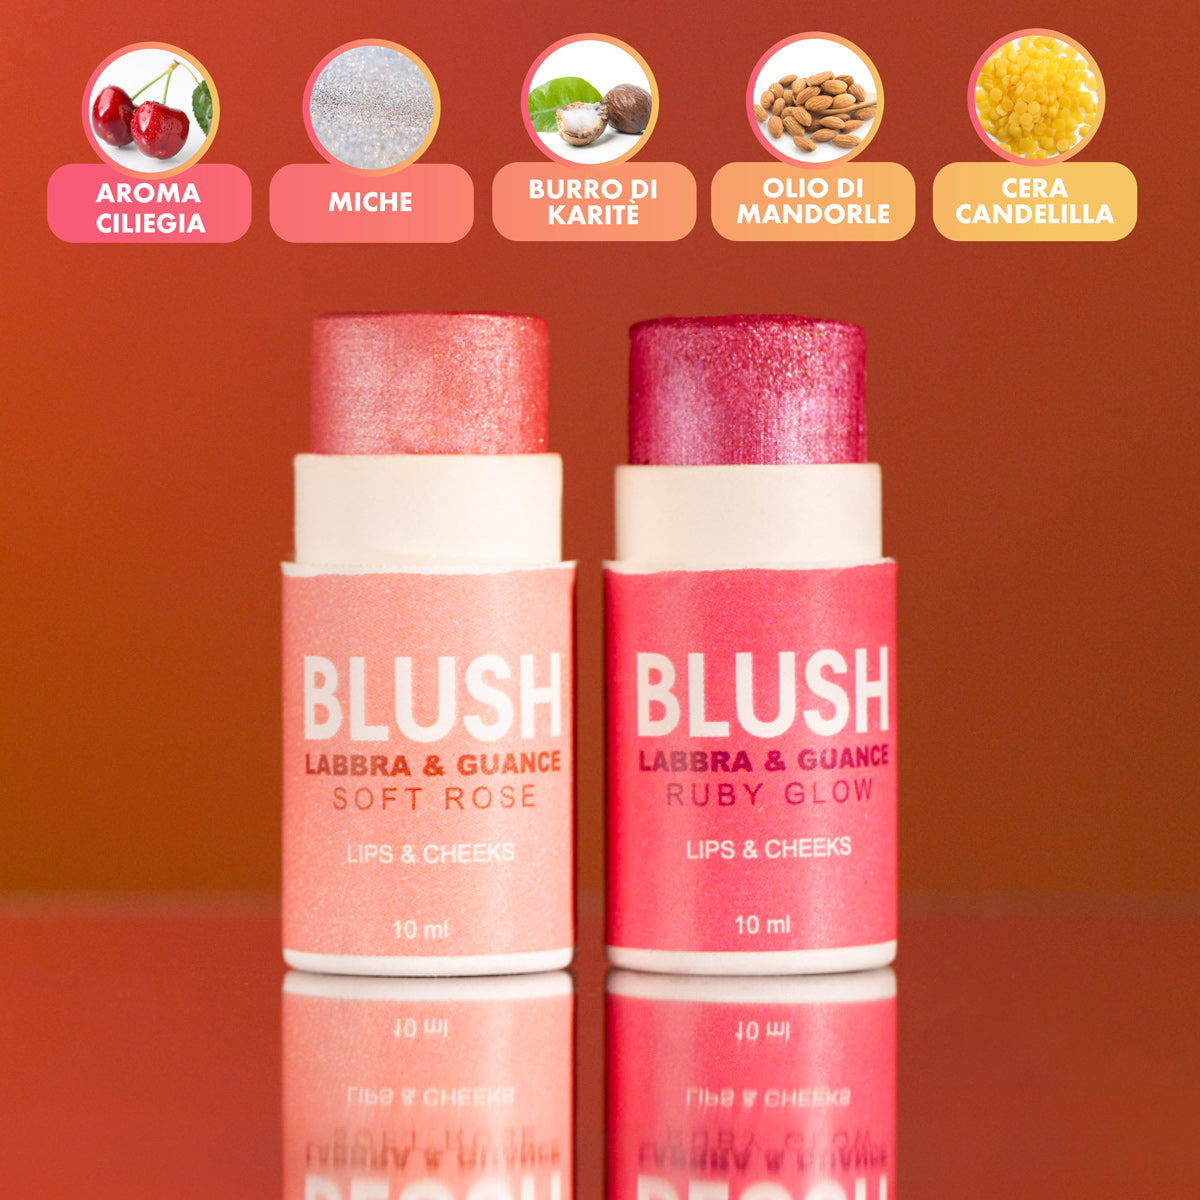 Blush Labbra e Guance - Ruby Glow